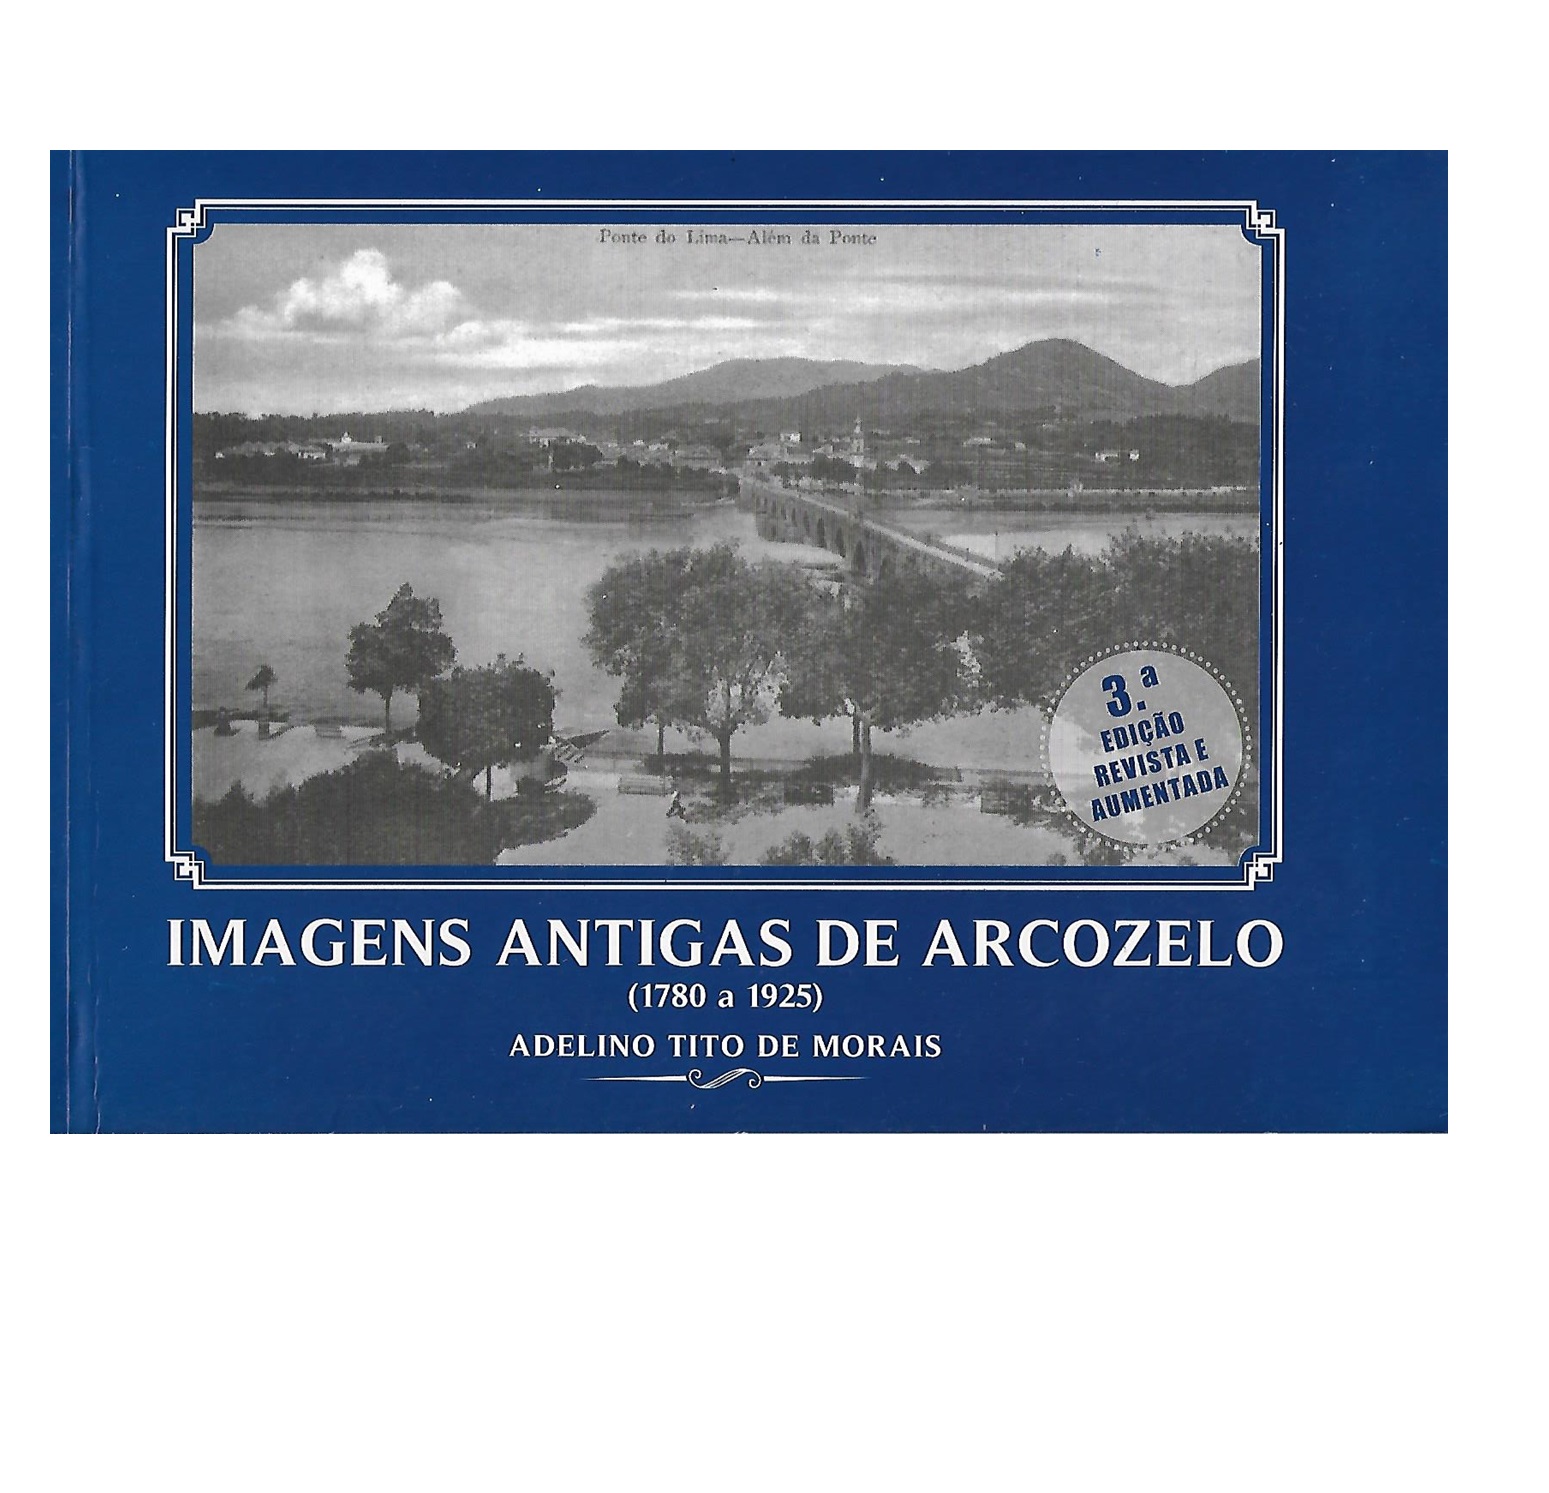  IMAGENS ANTIGAS DE ARCOZELO (1780 A 1925)